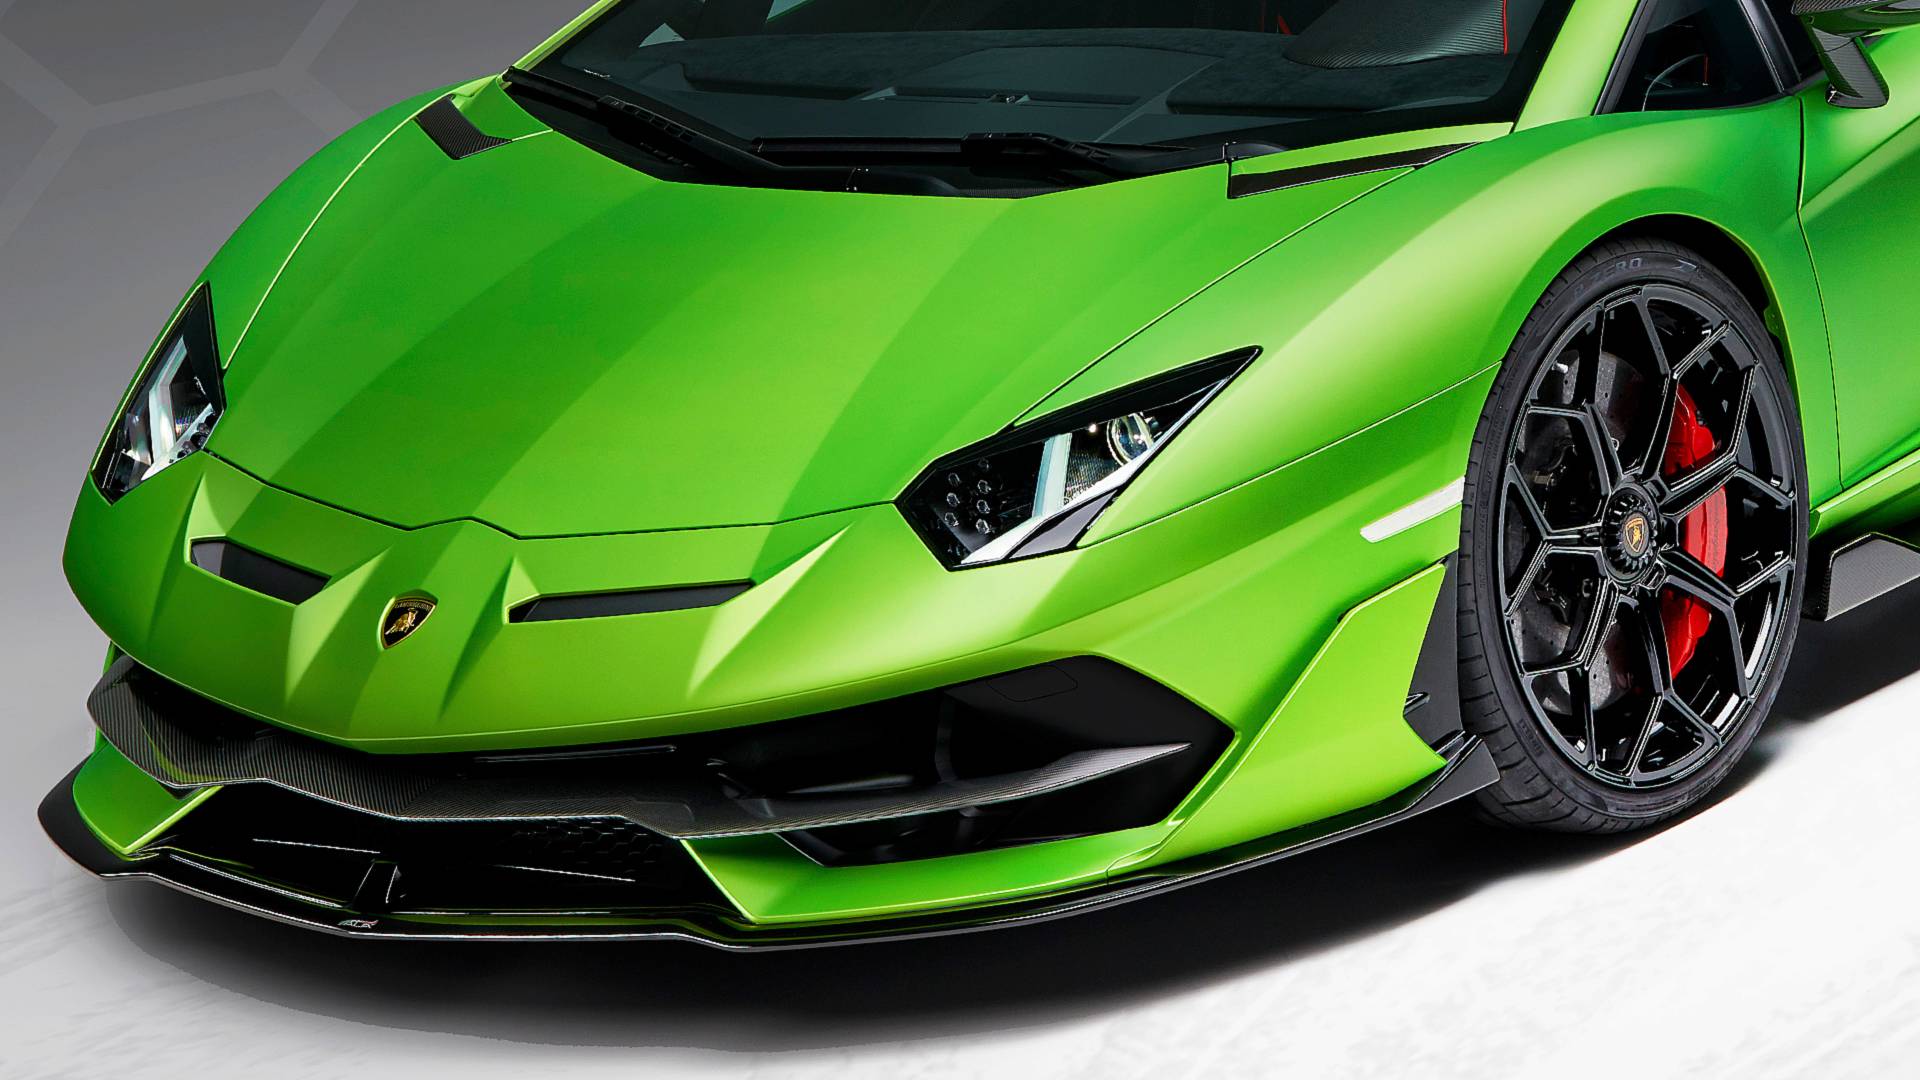 Lamborghini Aventador SVJ Revealed in Dealer Photo, Shows ...